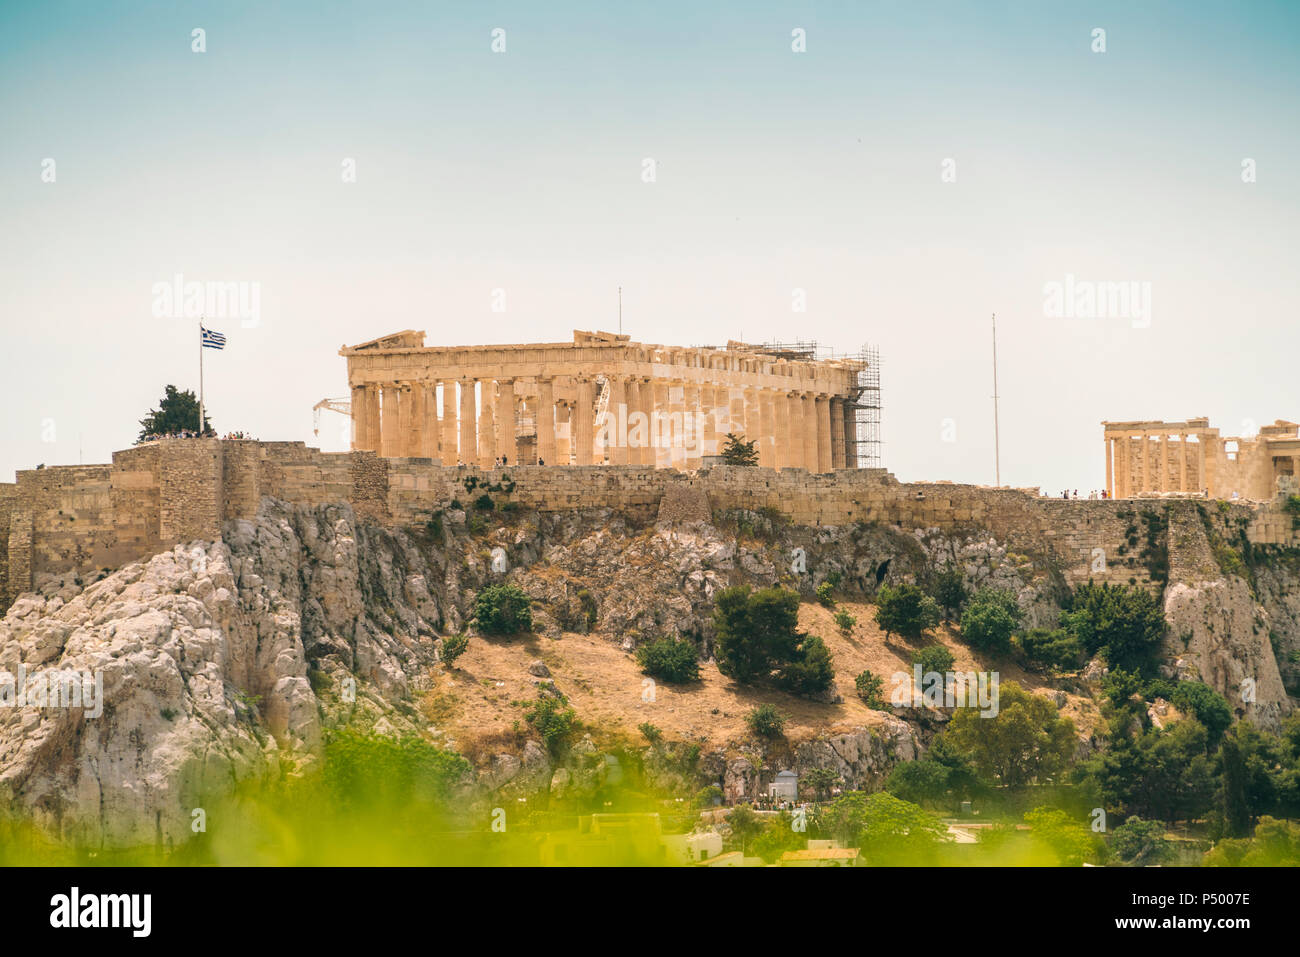 Grecia, Atenas, Acrópolis Foto de stock